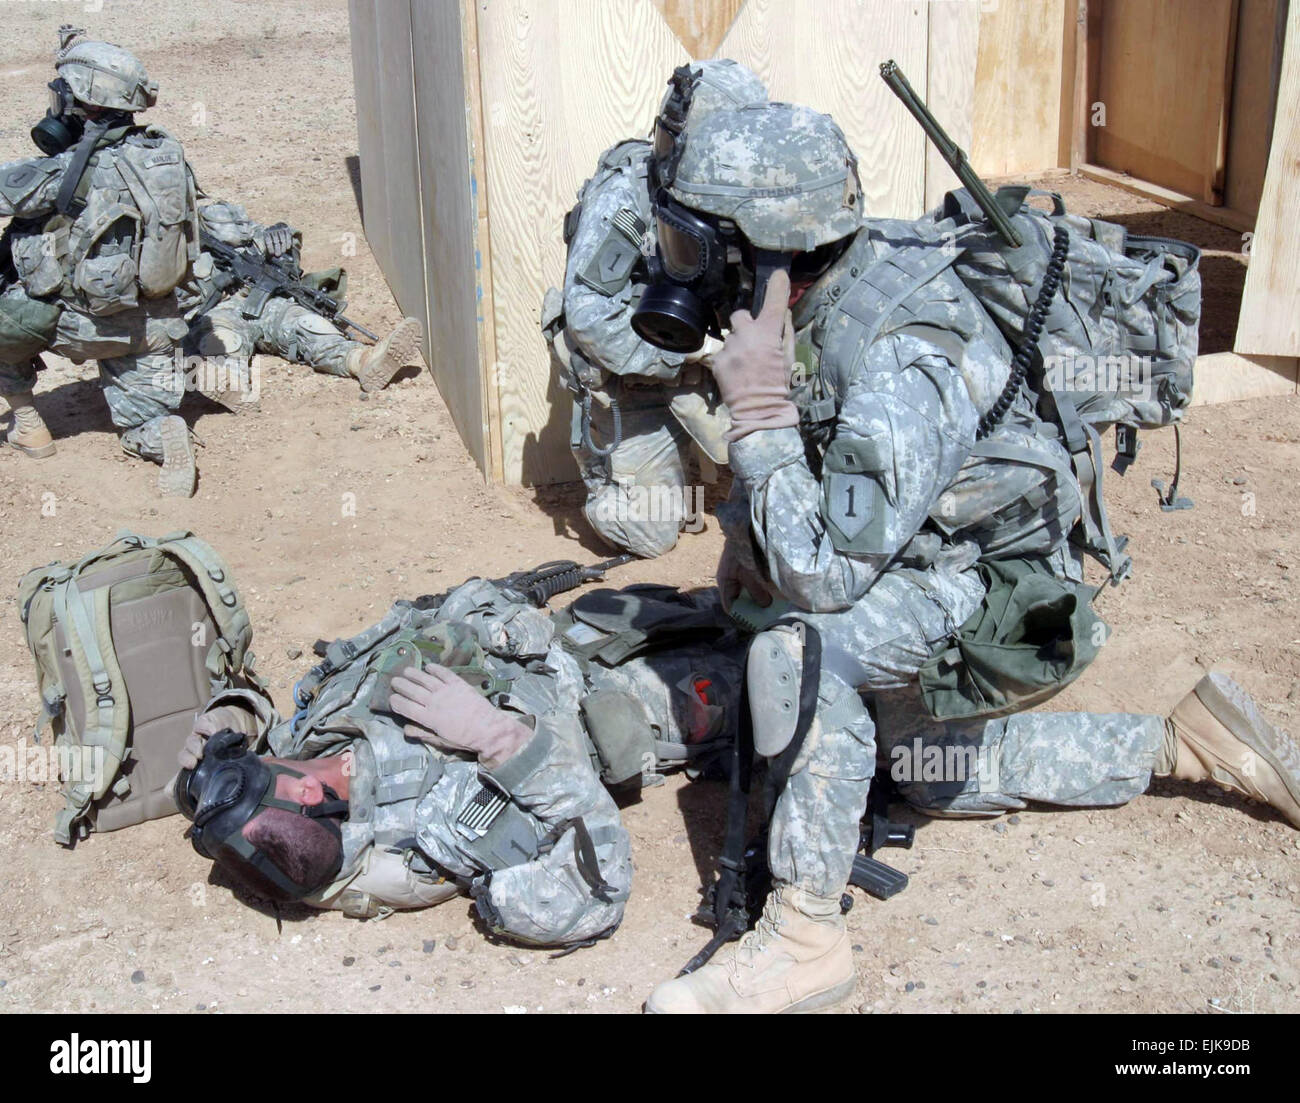 Un soldado del Ejército de EE.UU. llama en una evacuación médica después de un simulacro de ataque químico durante una misión de entrenamiento cerca del campamento Ramadi, Iraq, 25 de septiembre, 2007. El Sgt. Andrew D. Pendracki Foto de stock